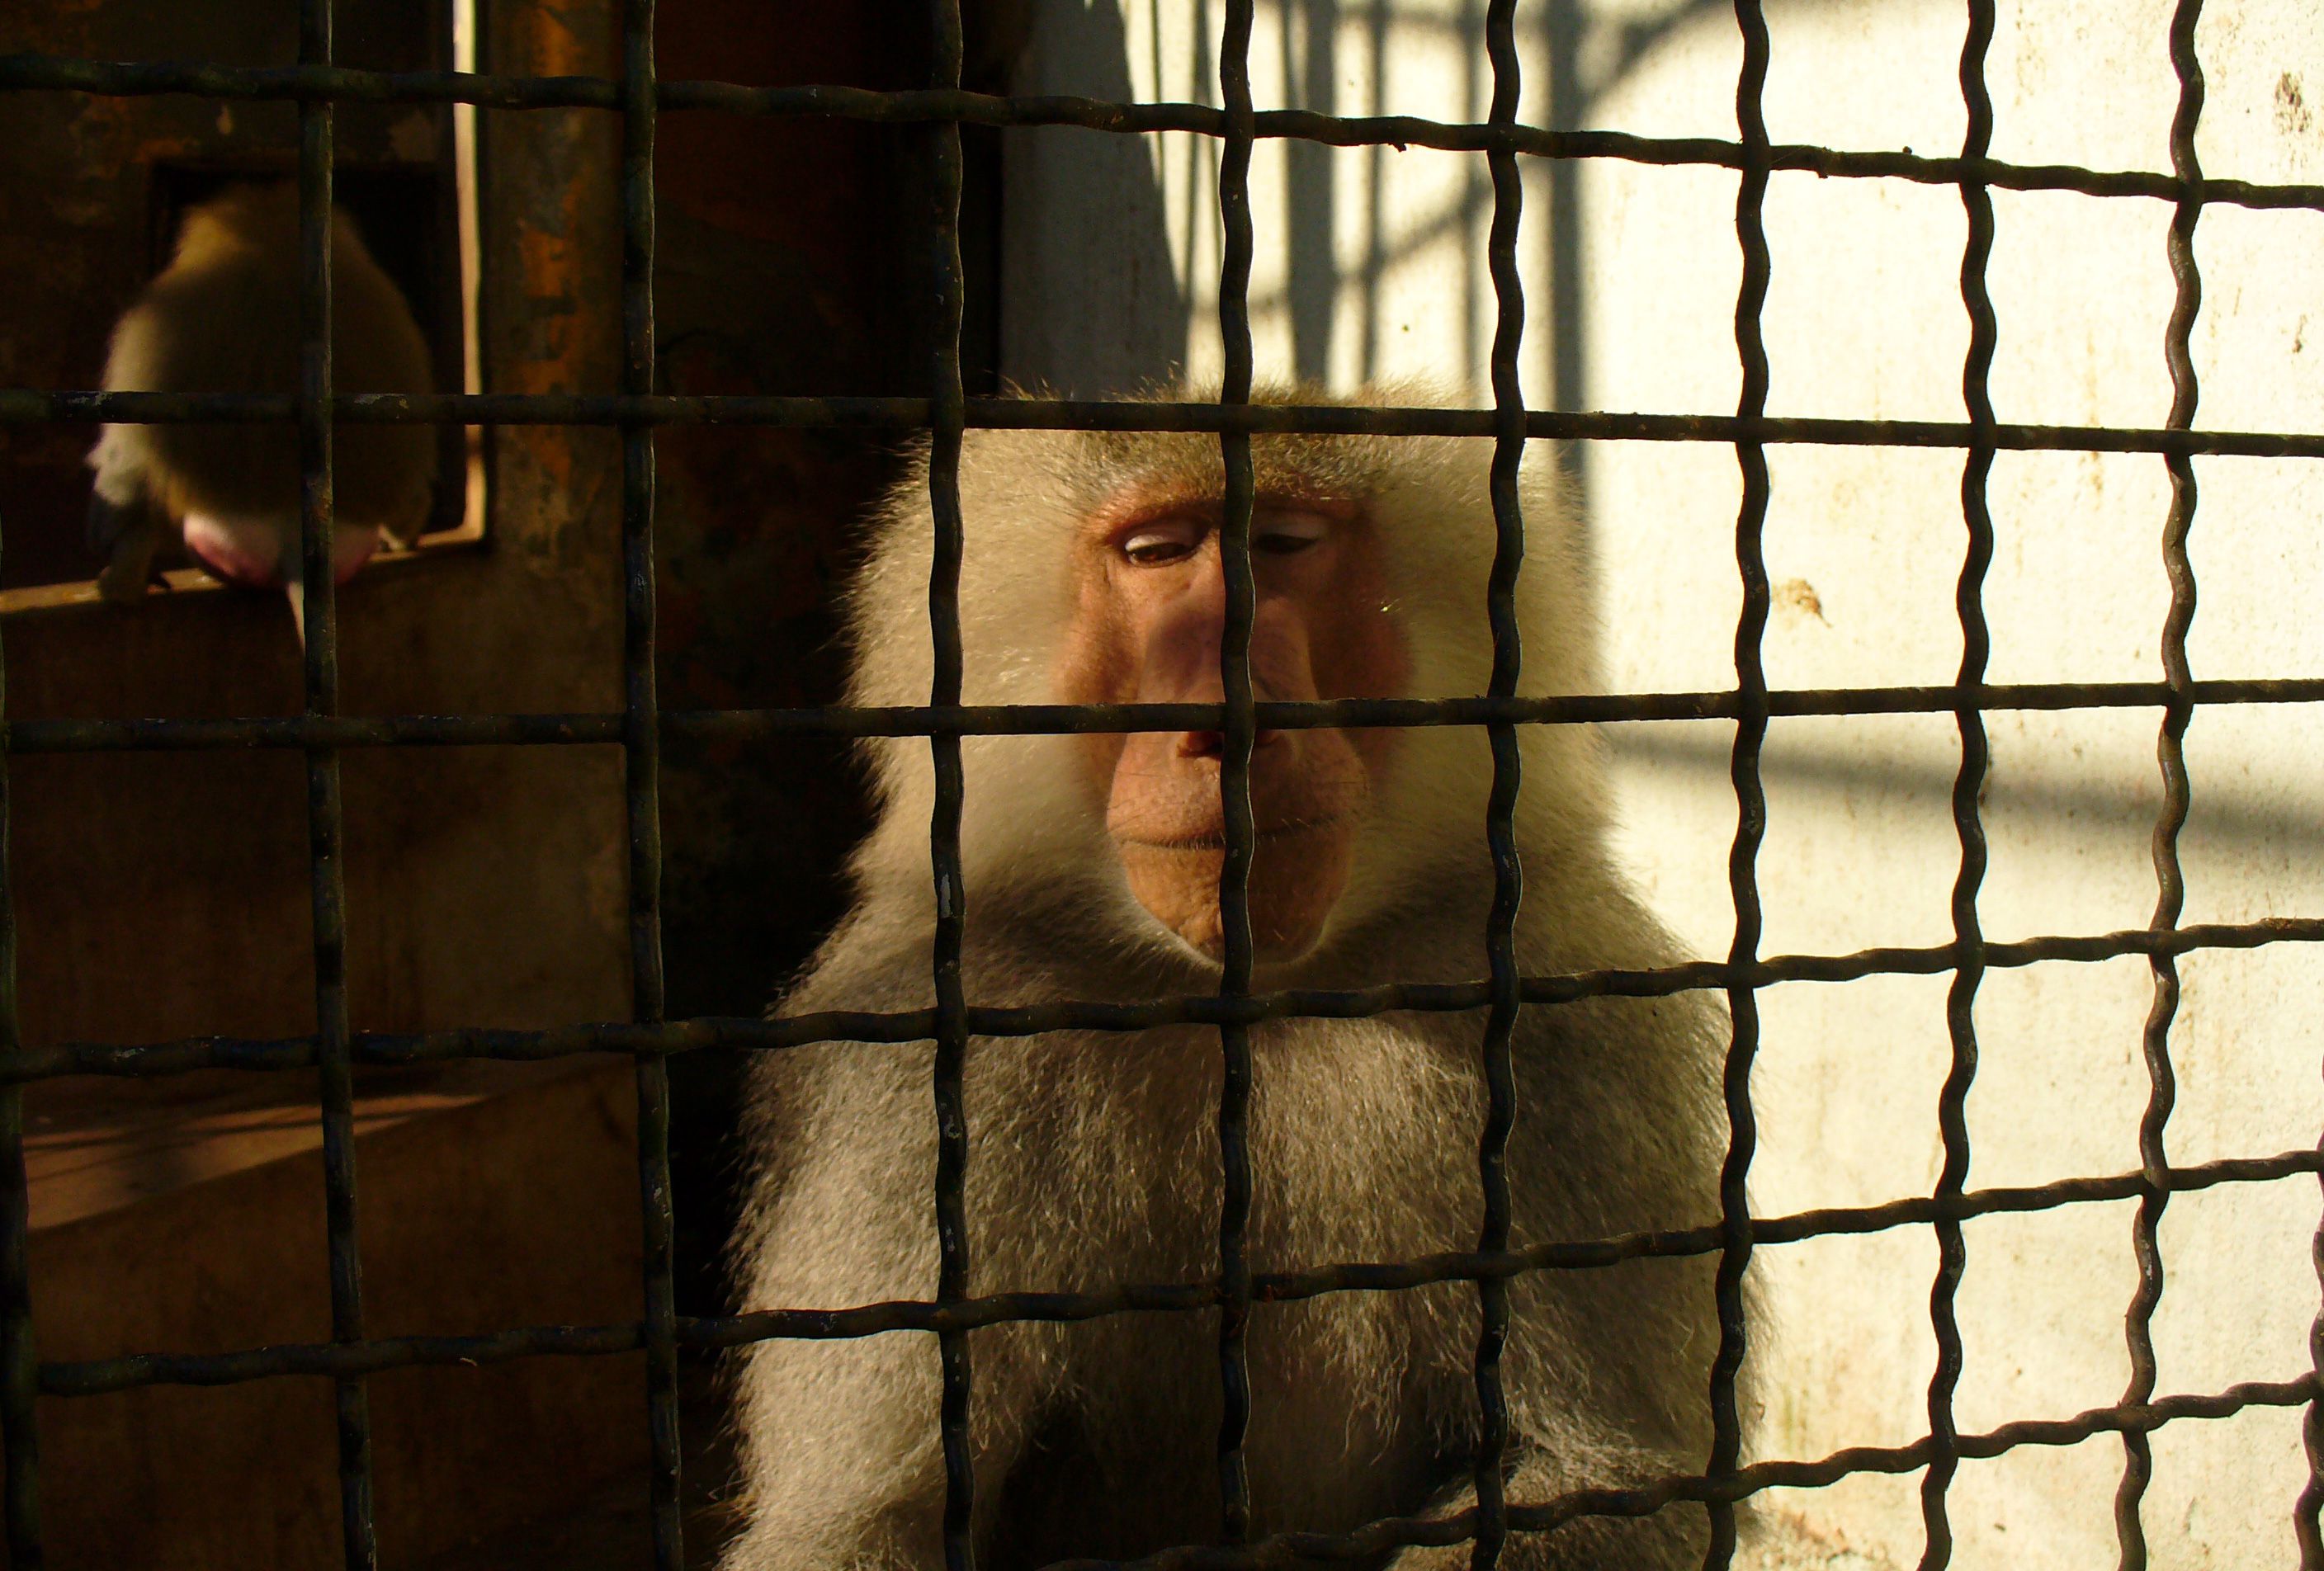 Free Image: Sad monkey behind bars | Libreshot Public Domain Photos